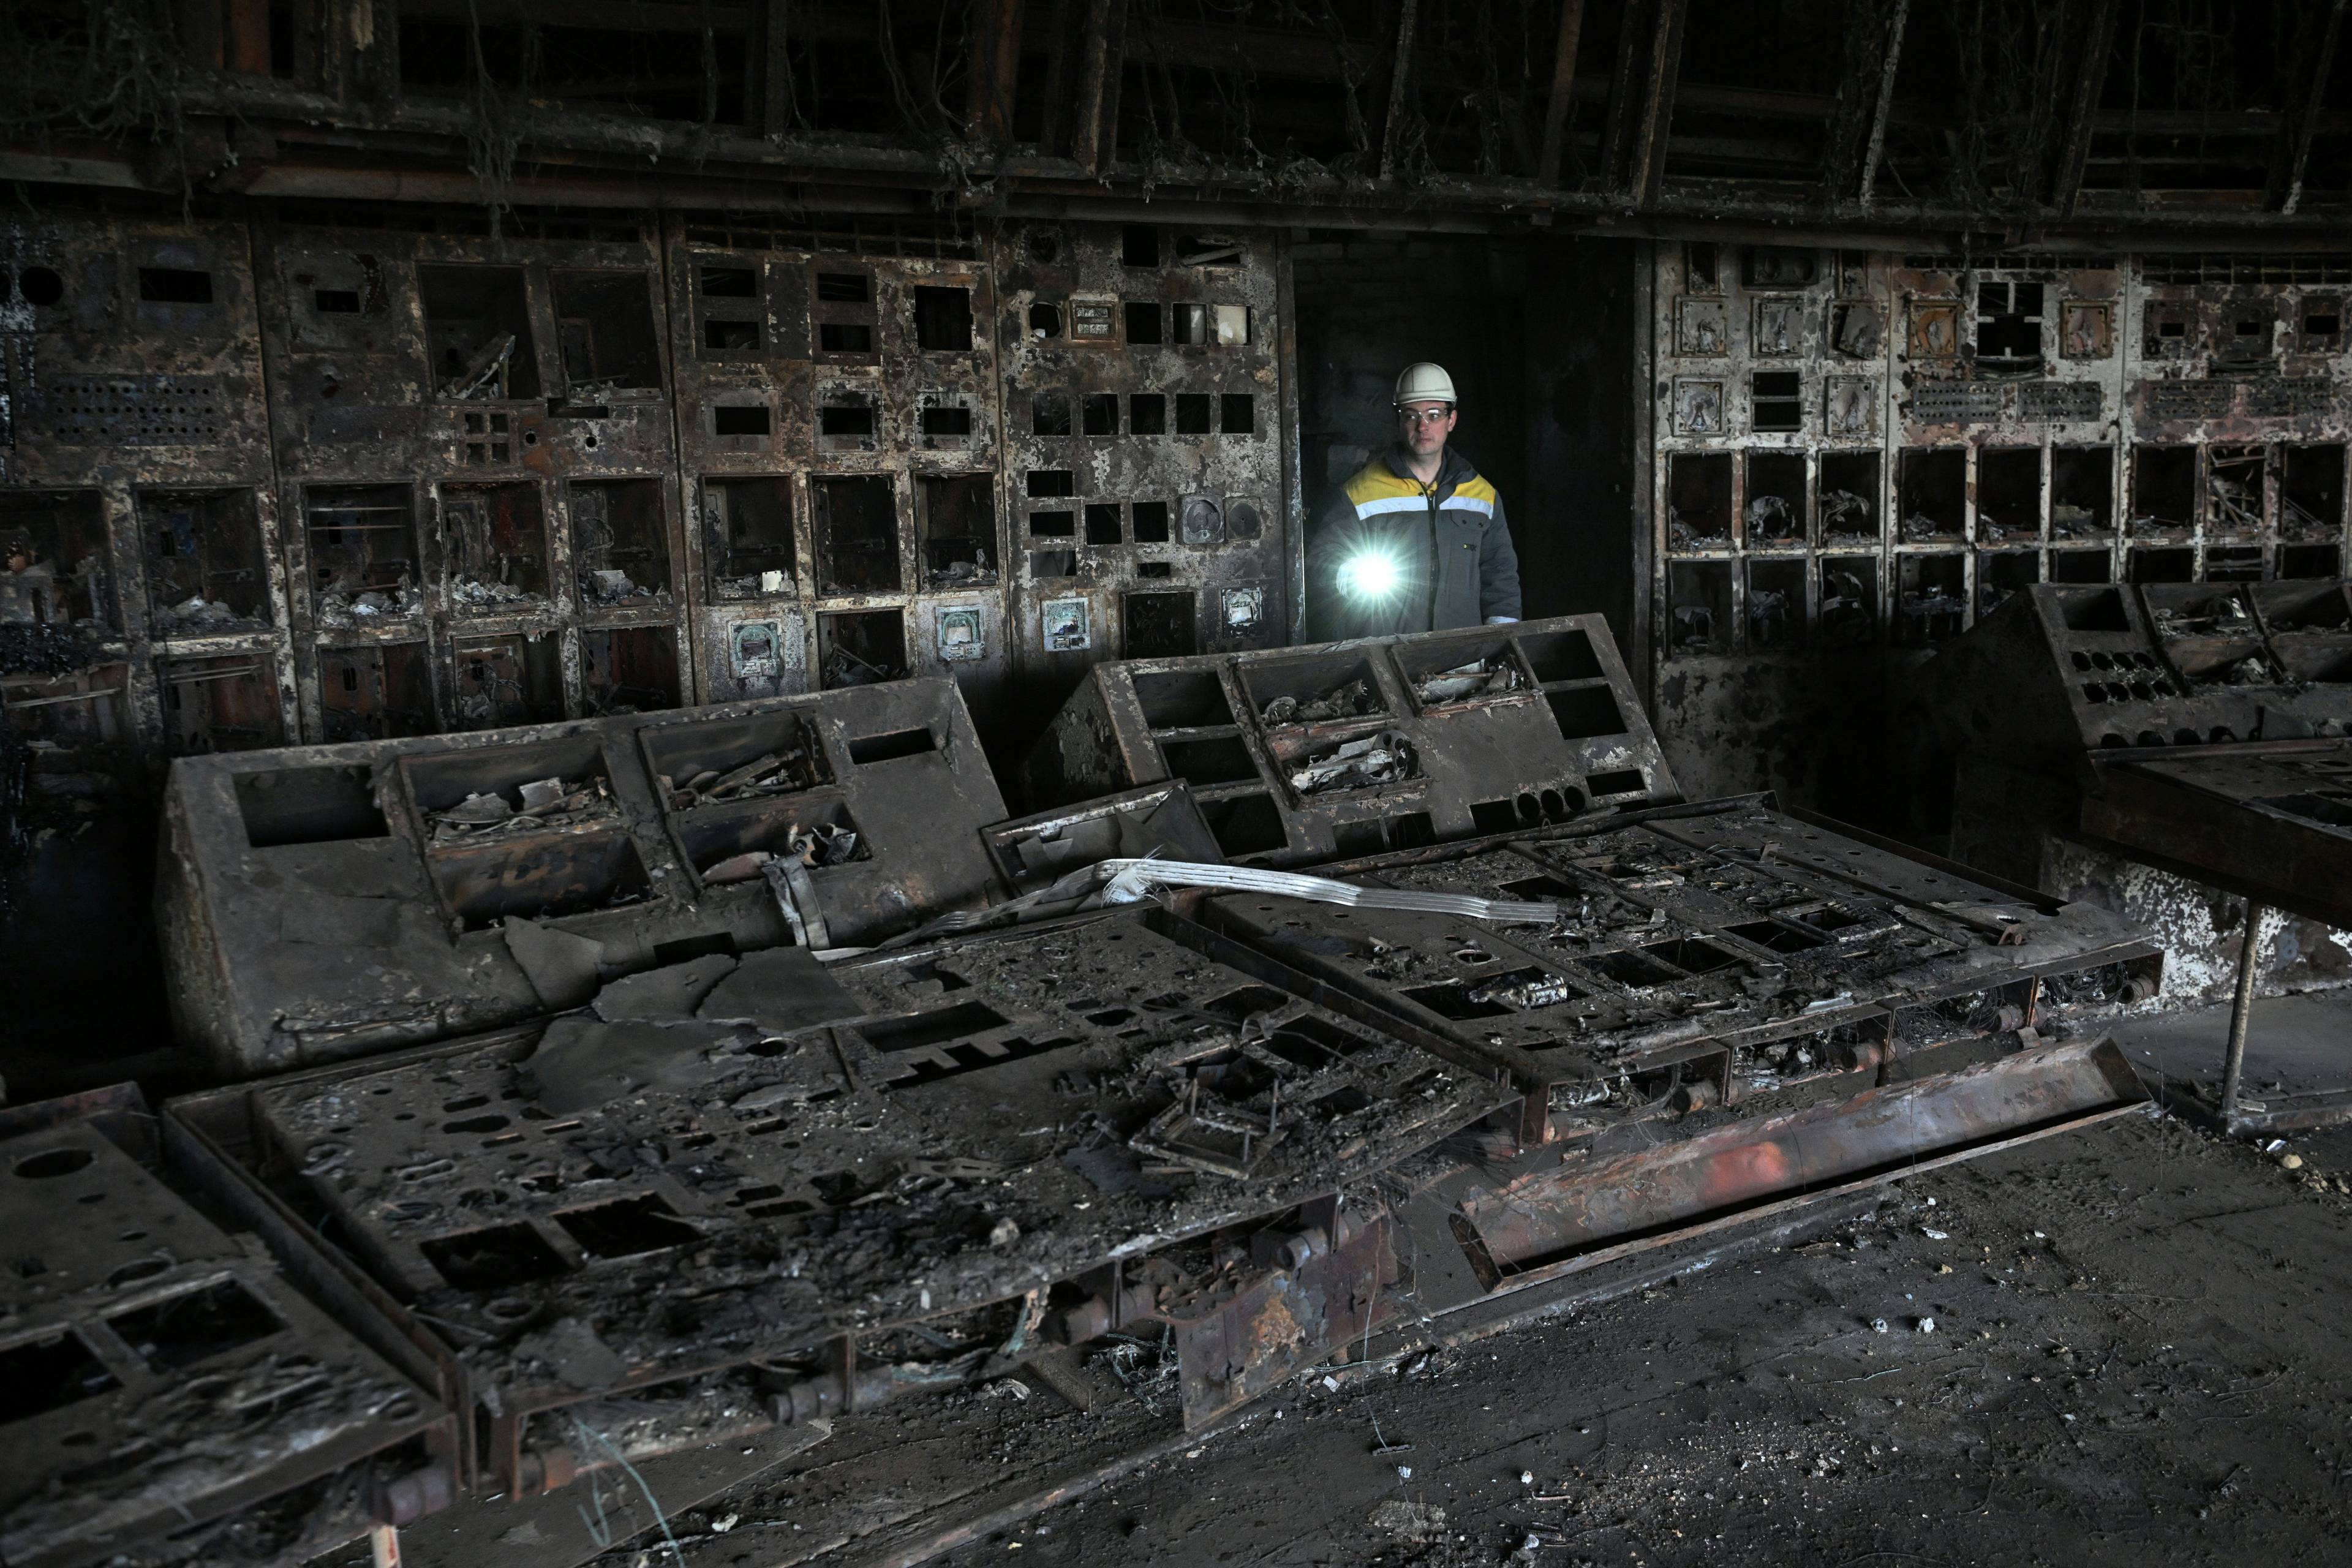 Na zdjęciu widać pracownika elektrowni, który przechodzi przez spalone pomieszczenie. W ręce trzyma włączoną latarkę. Ukraińska energetyka zagrożona